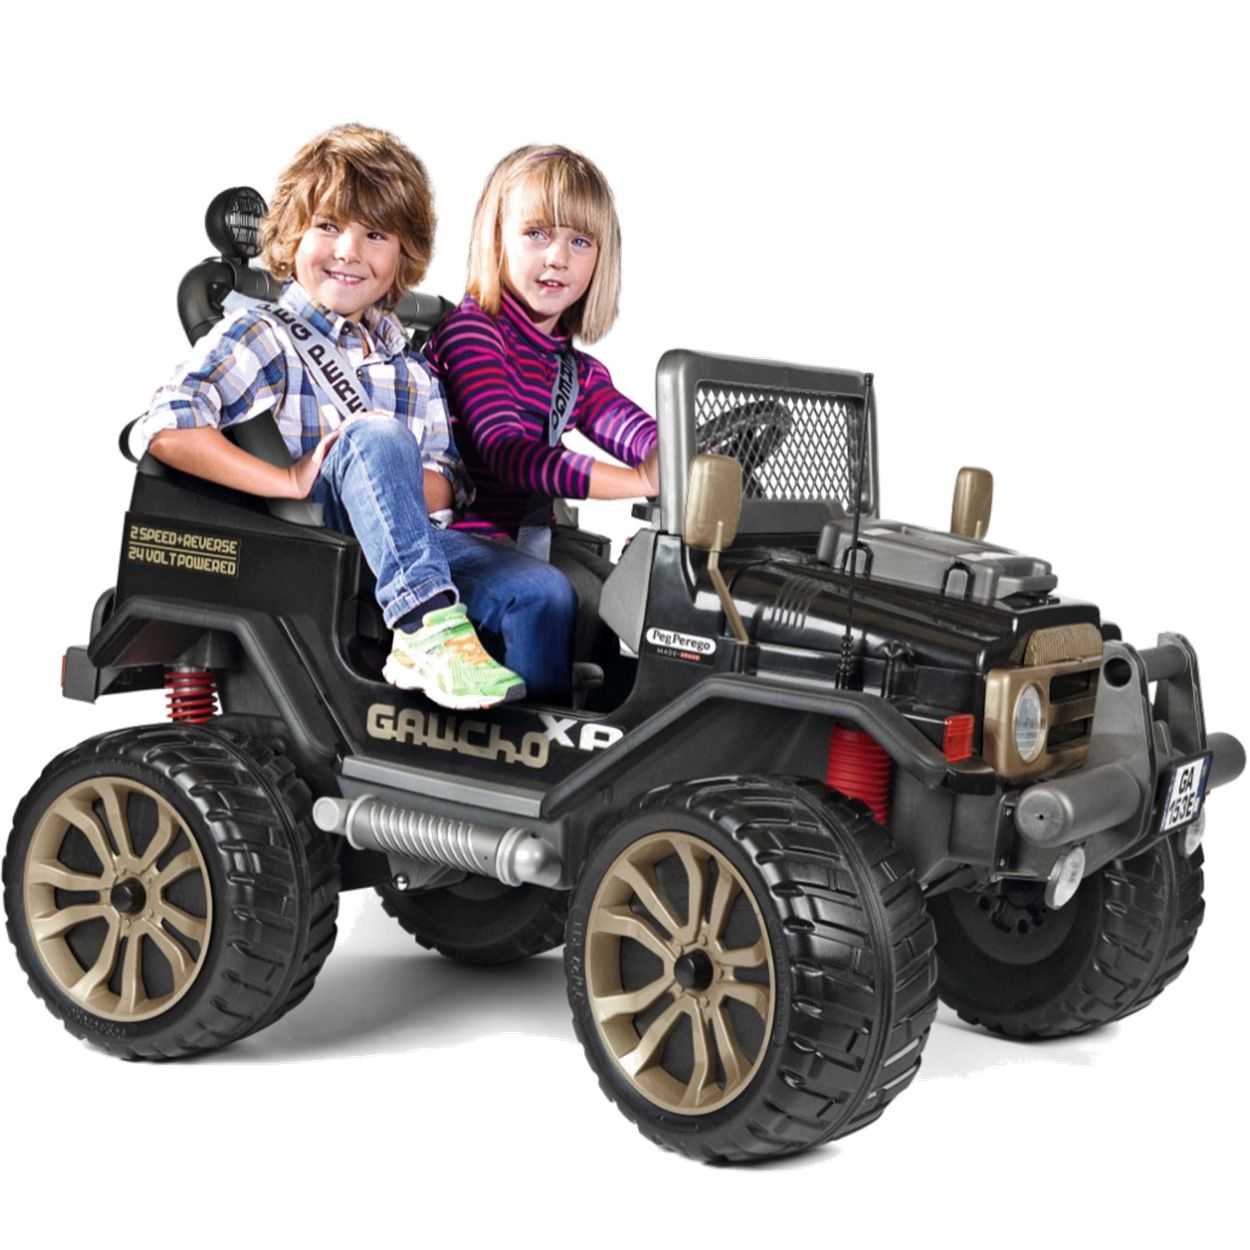 Carro de corrida de 4 rodas para crianças de 3 a 8 anos, com